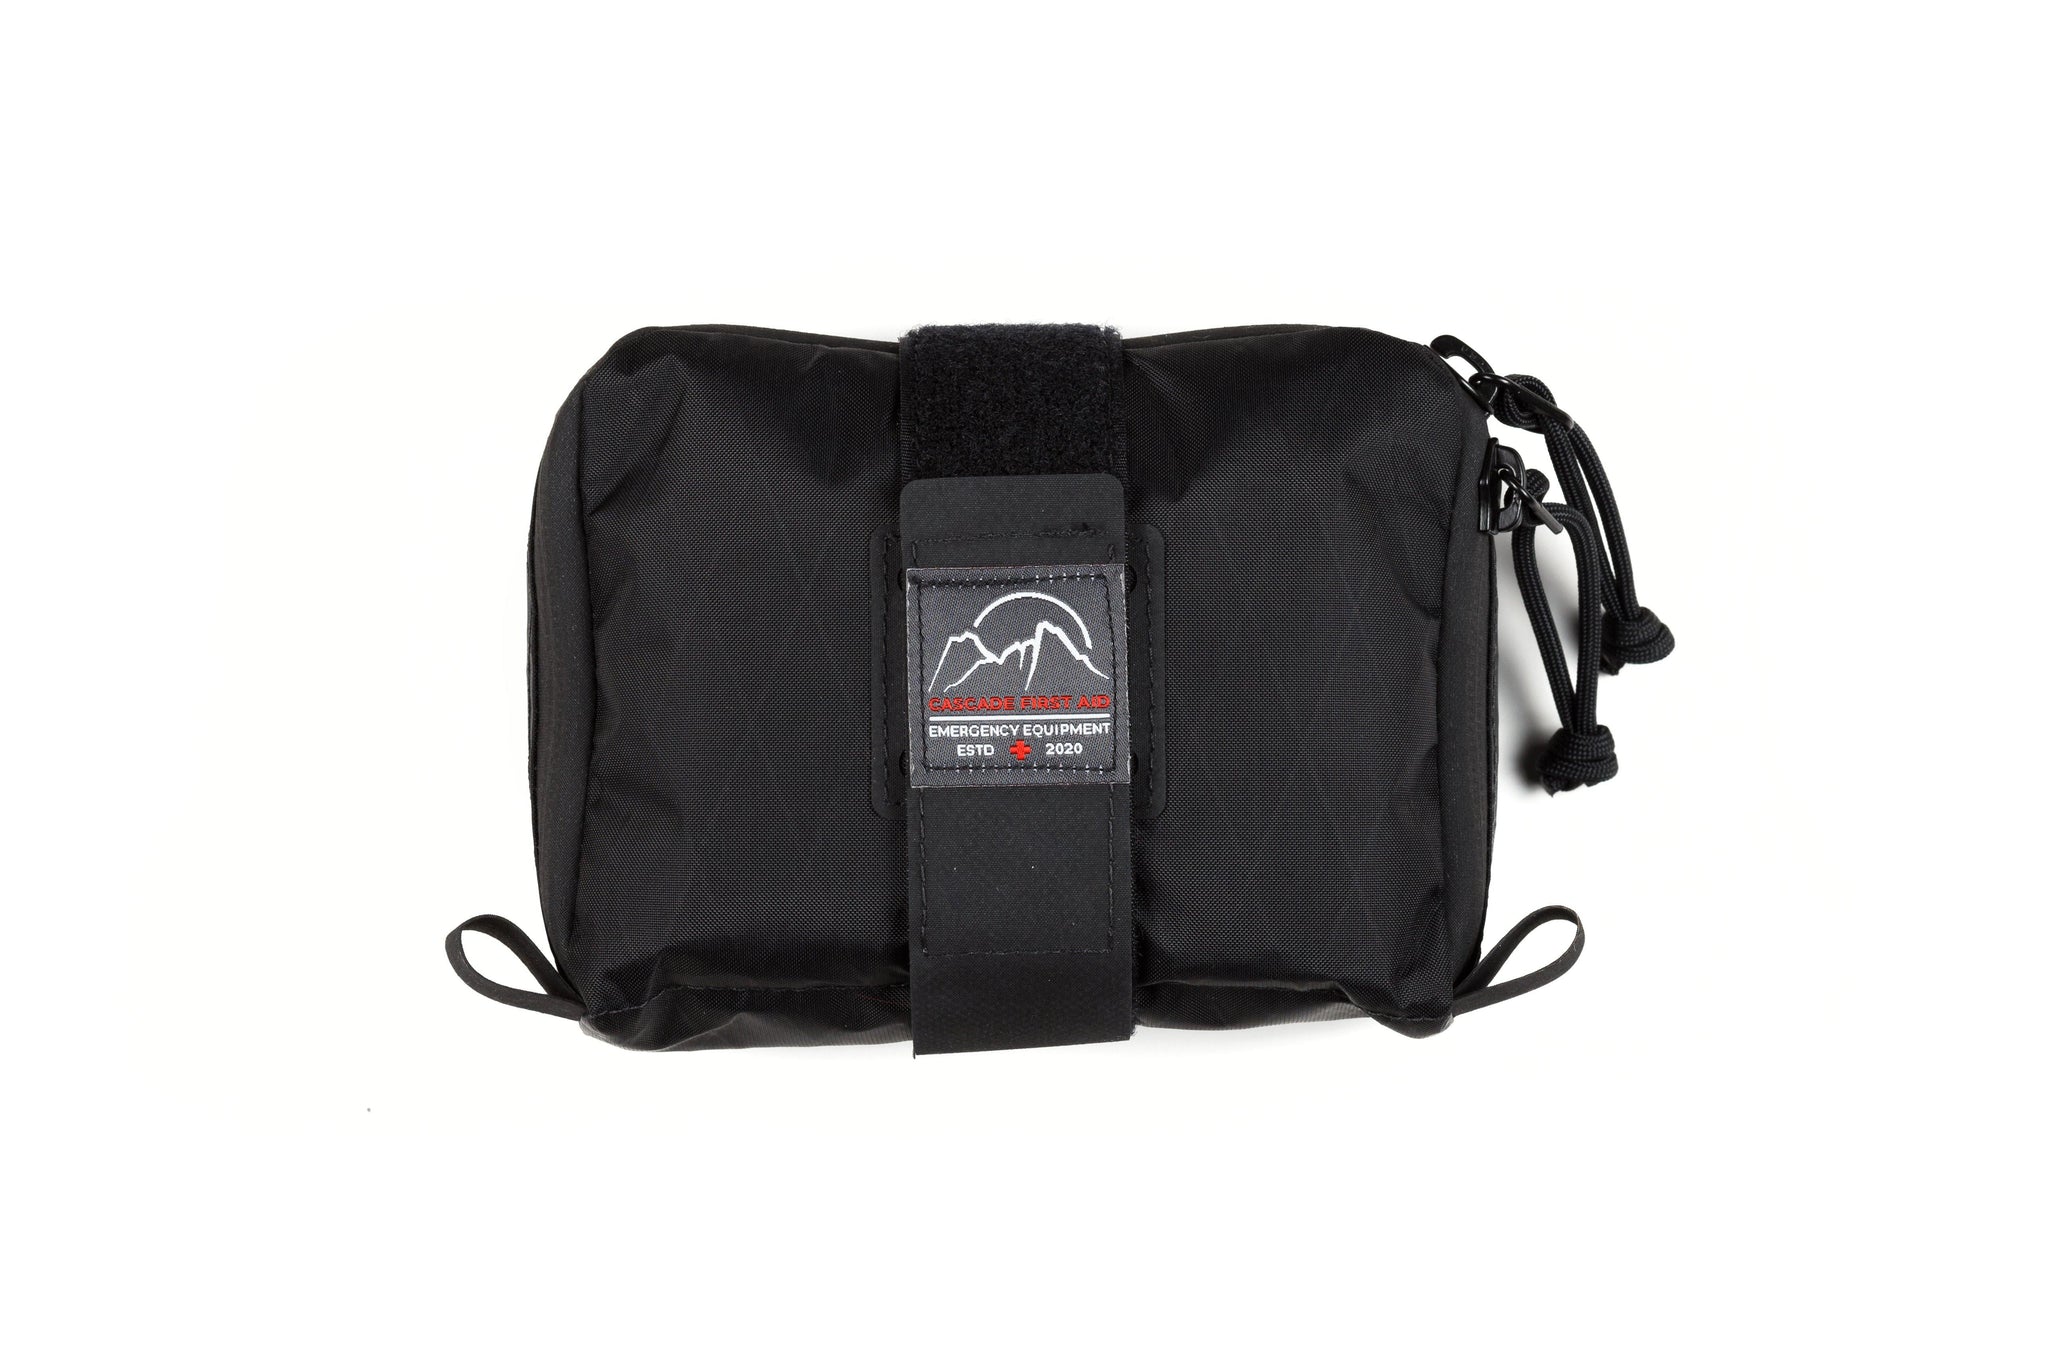 Cascade Mountain Tech 0 Degree Sleeping Bag | Costco